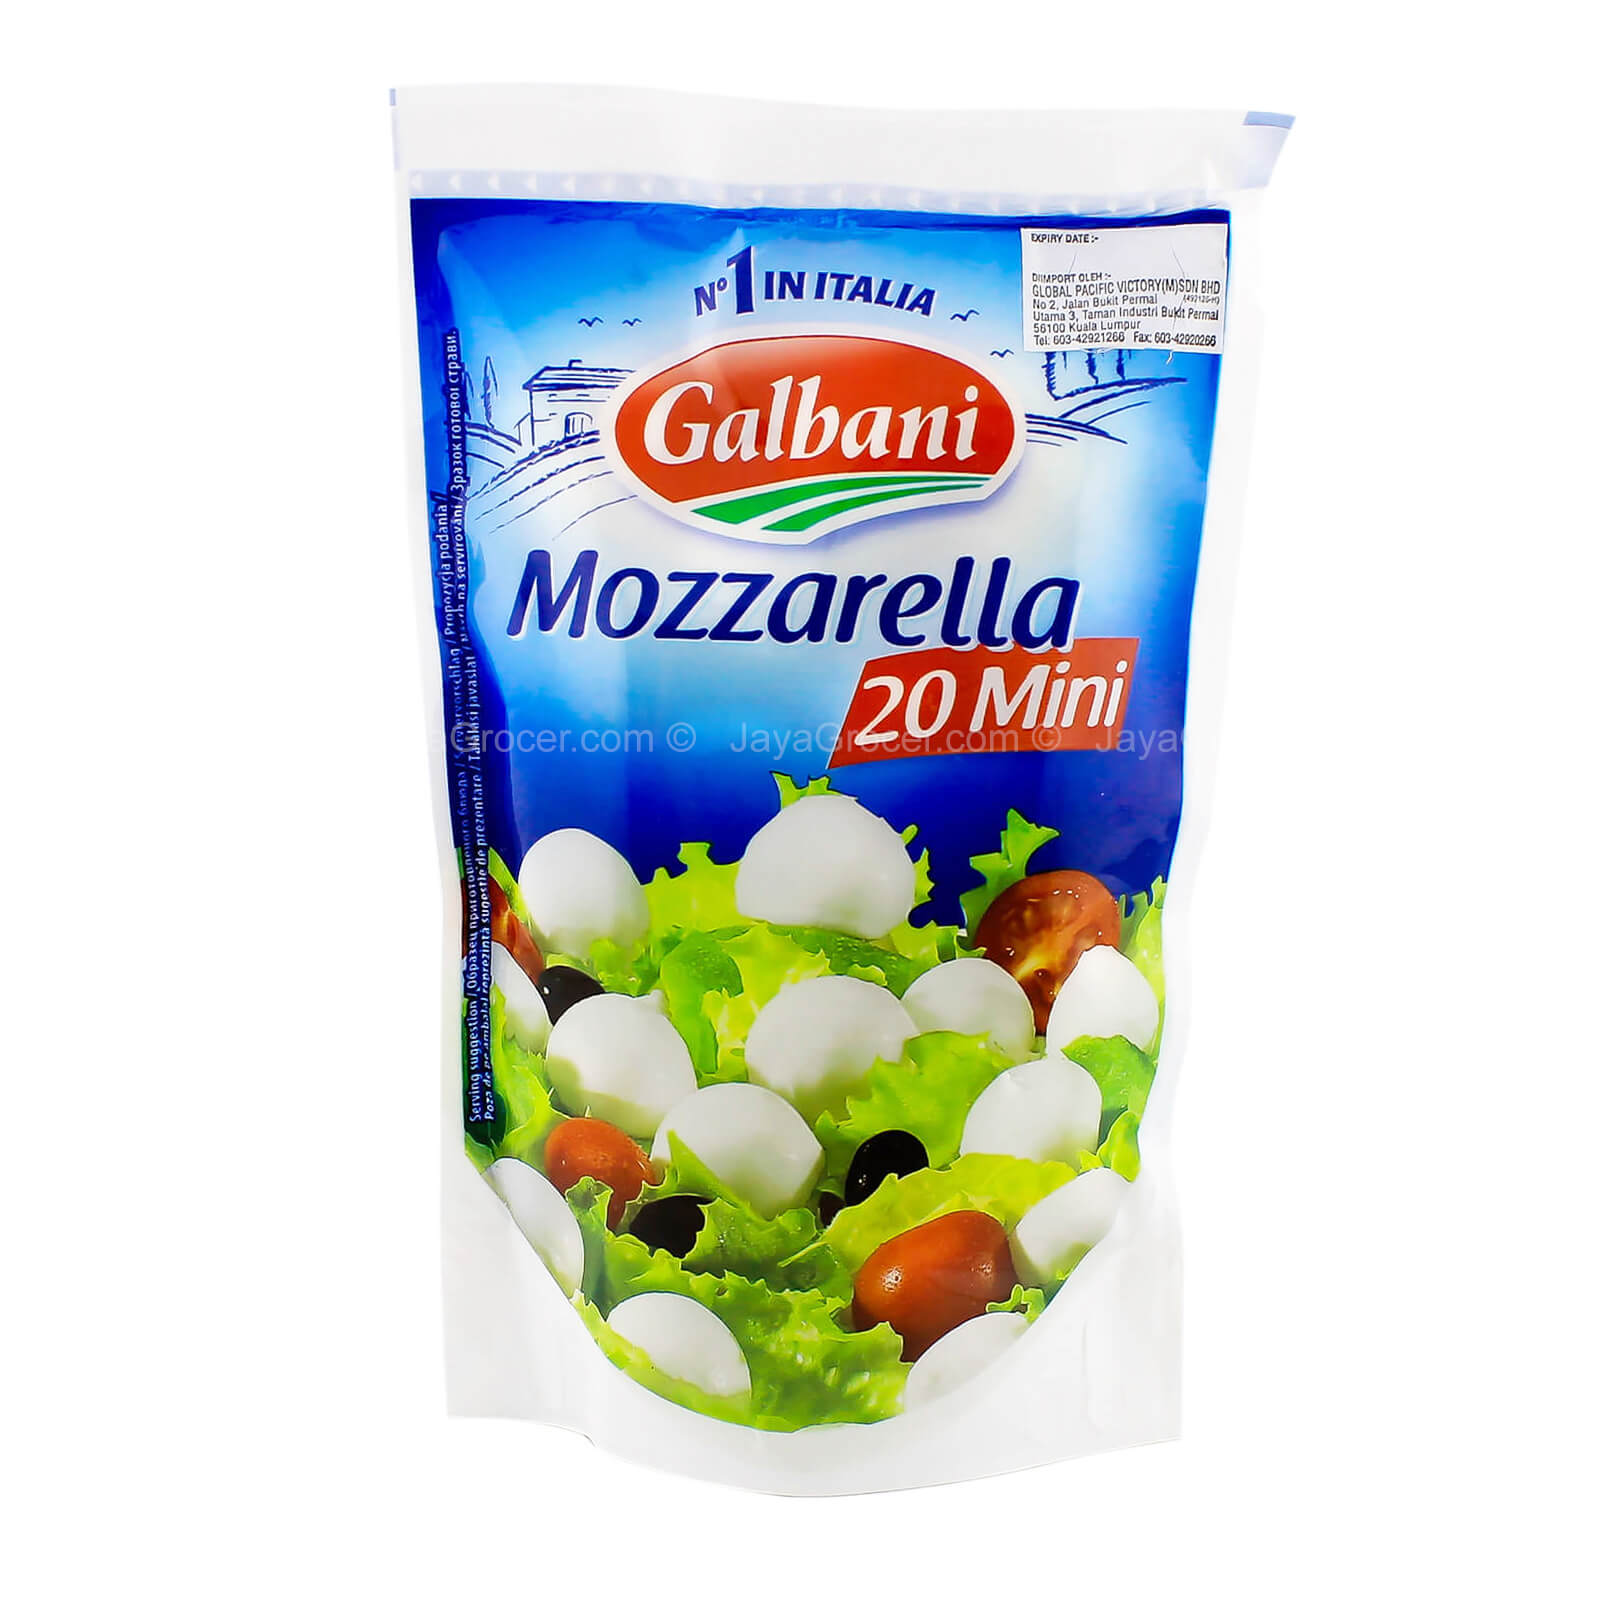 Mozzarella 20 mini Galbani